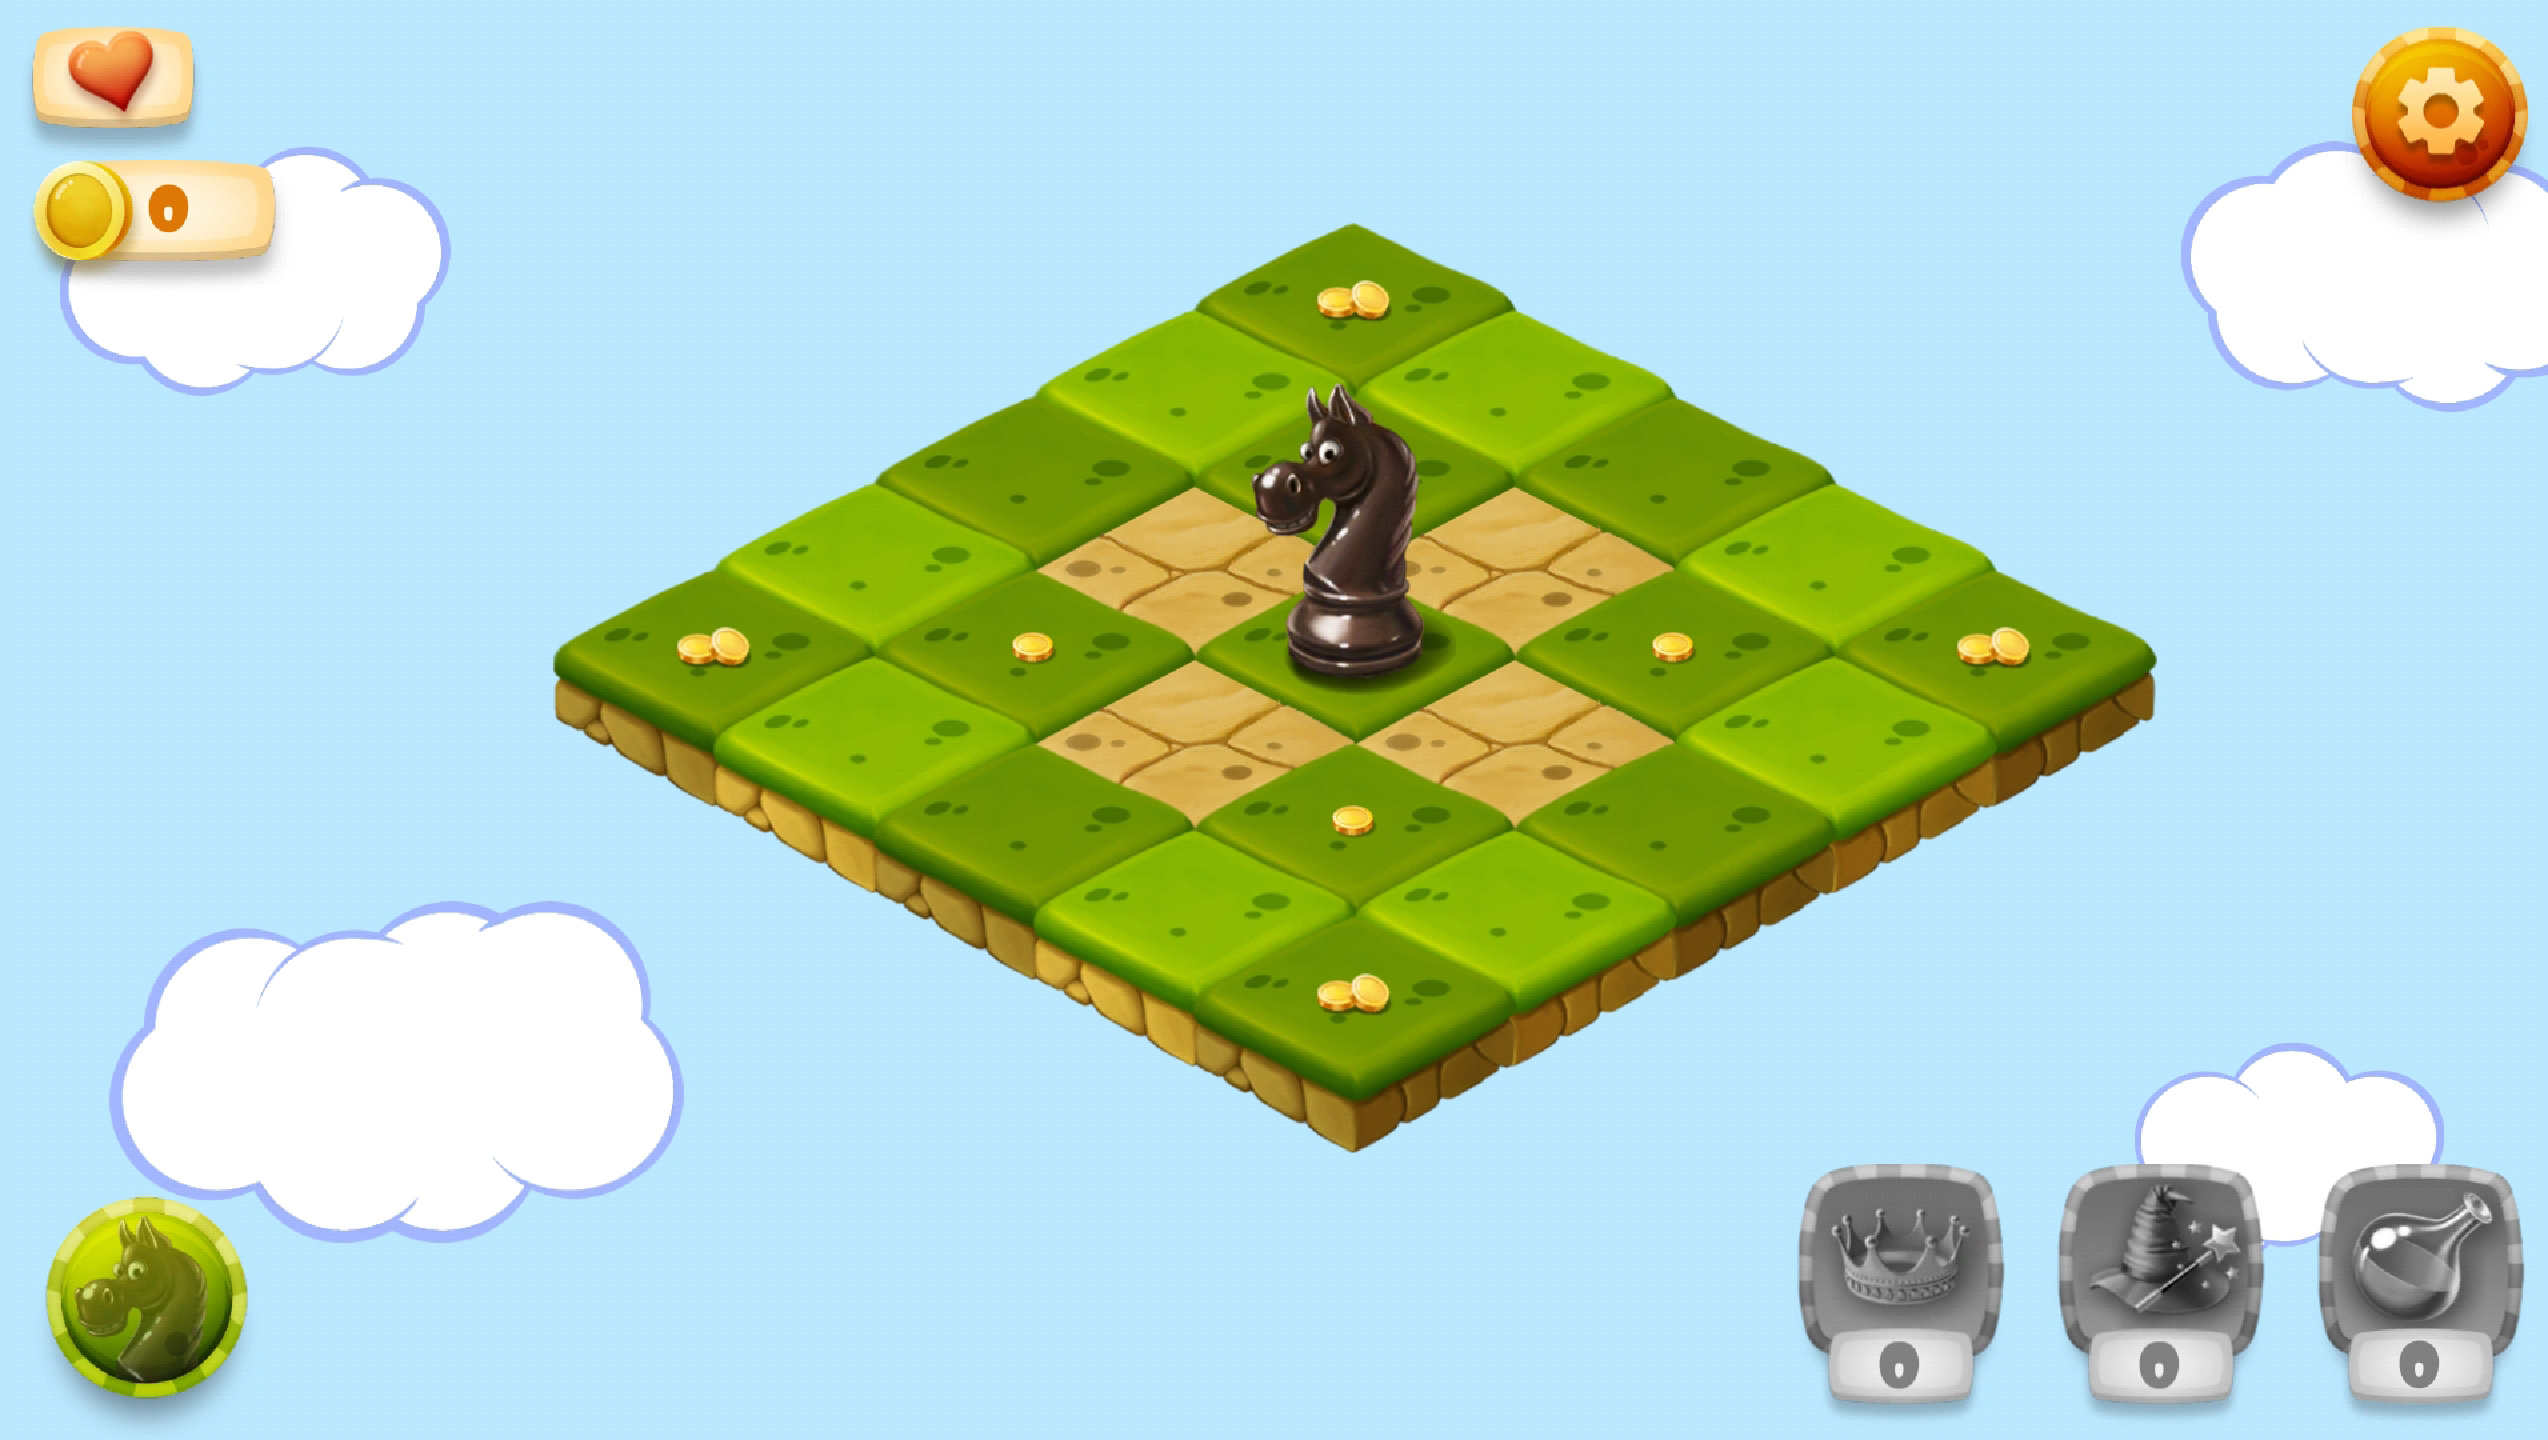 Przykładowy poziom gry (screenshot)